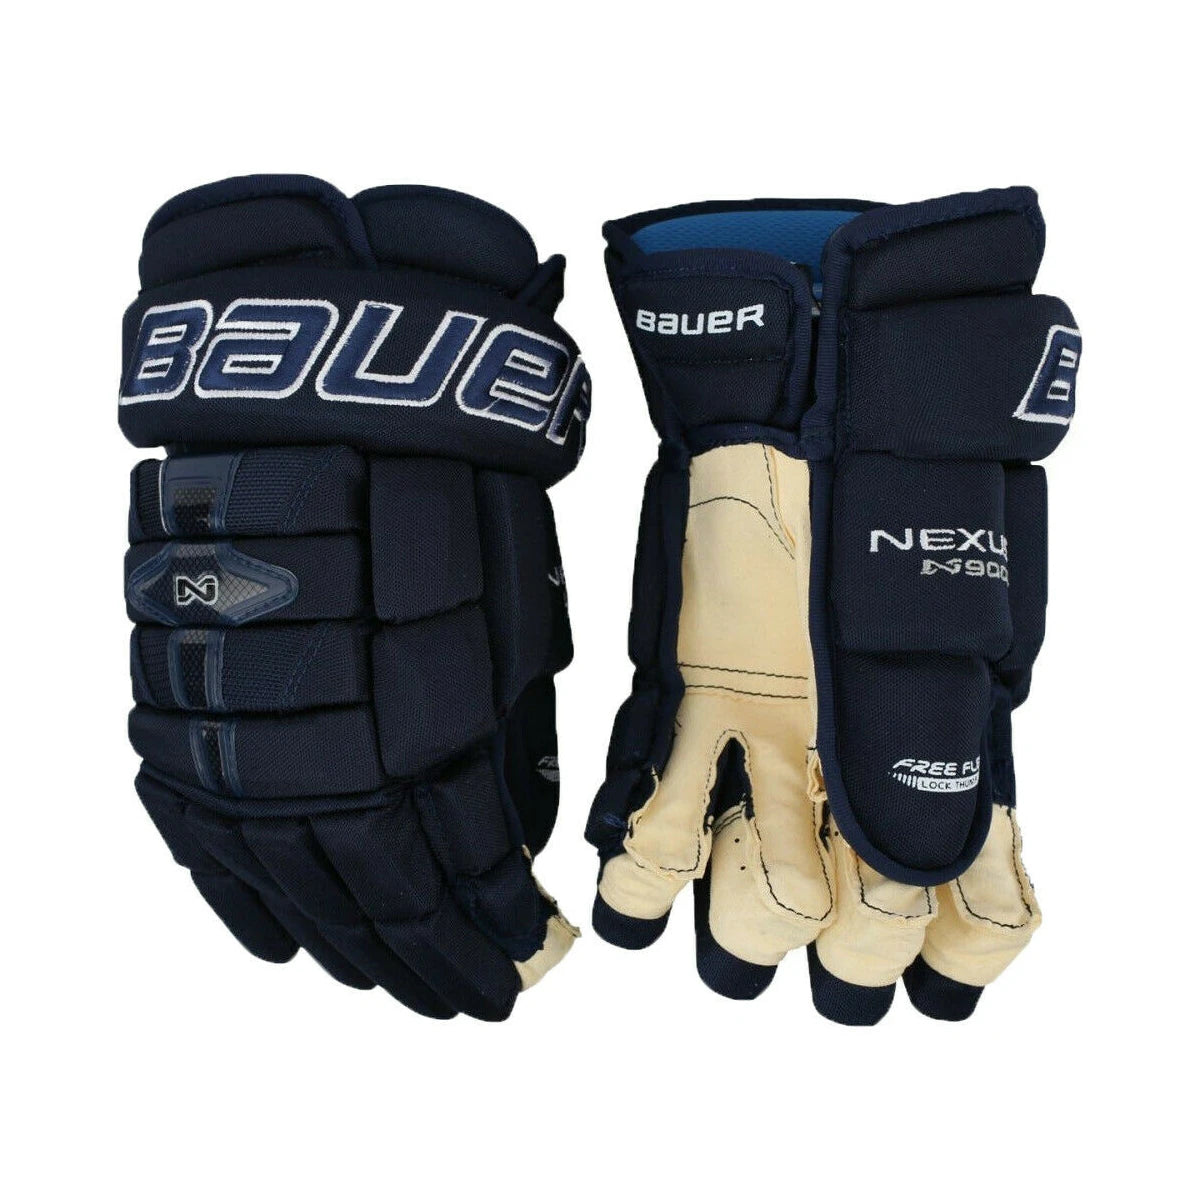 Bauer Nexus N9000 JR gloves